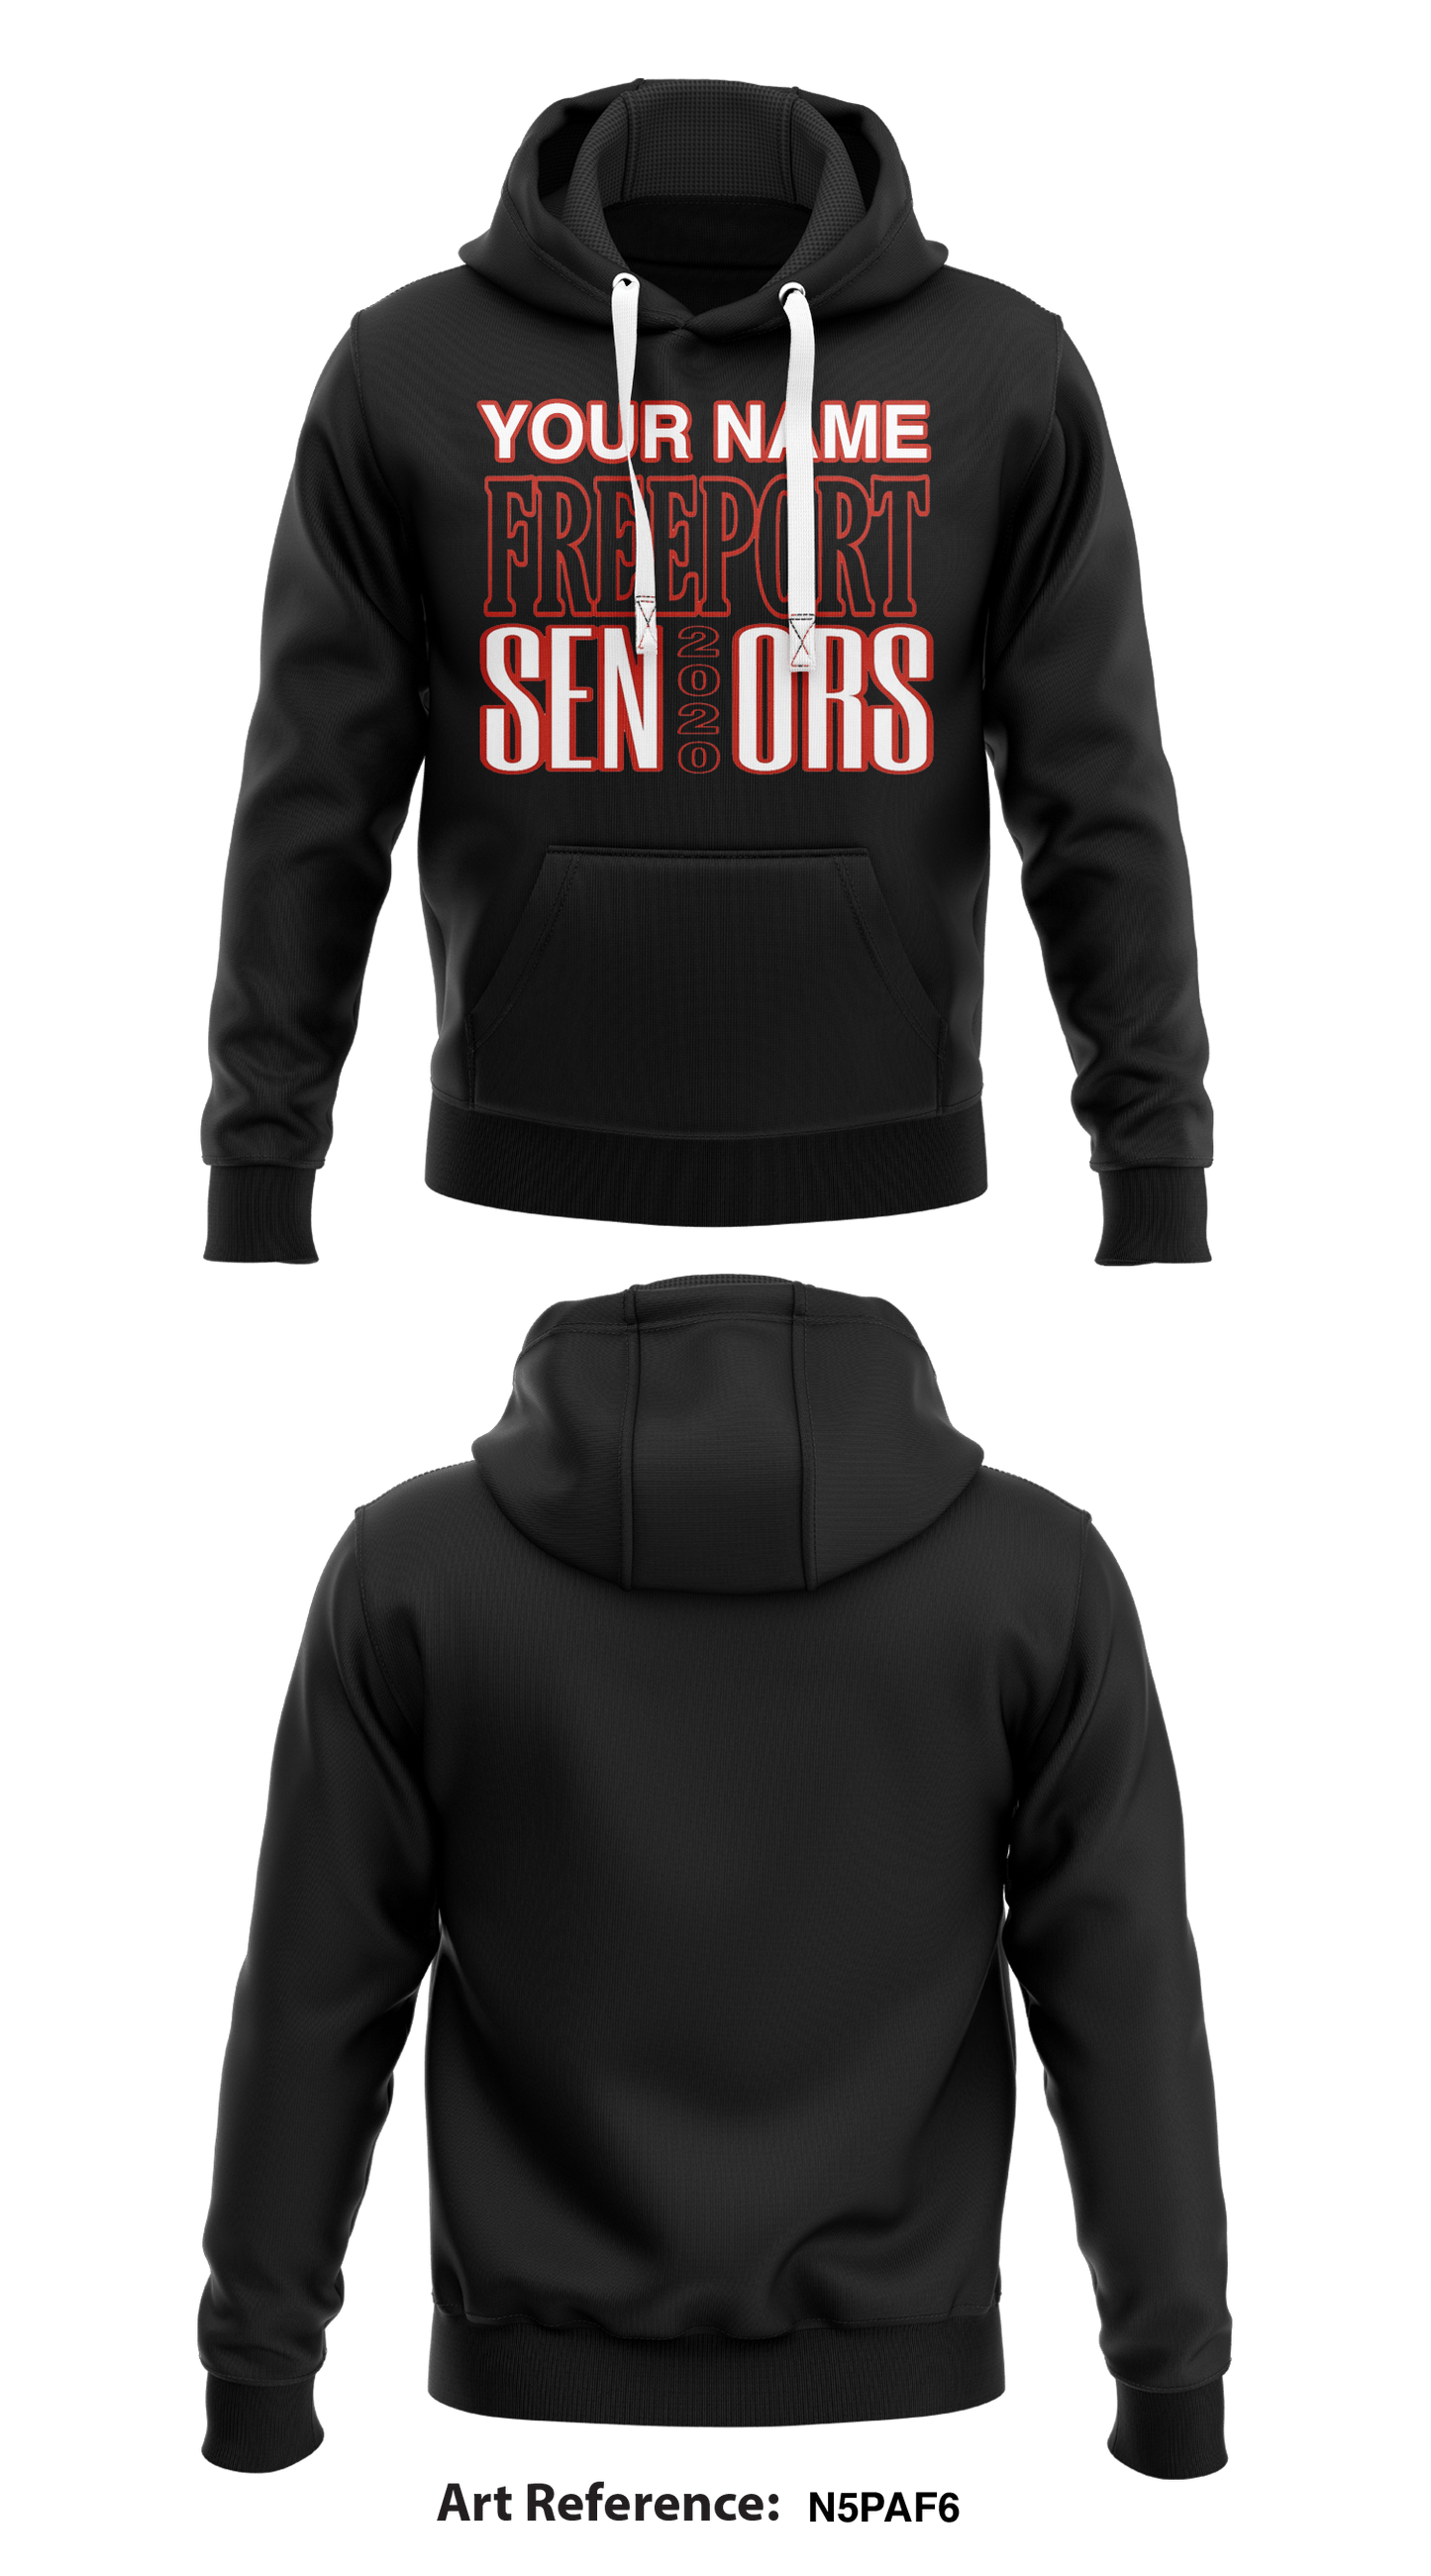 Freeport Seniors  Core Men's Hooded Performance Sweatshirt - N5PaF6